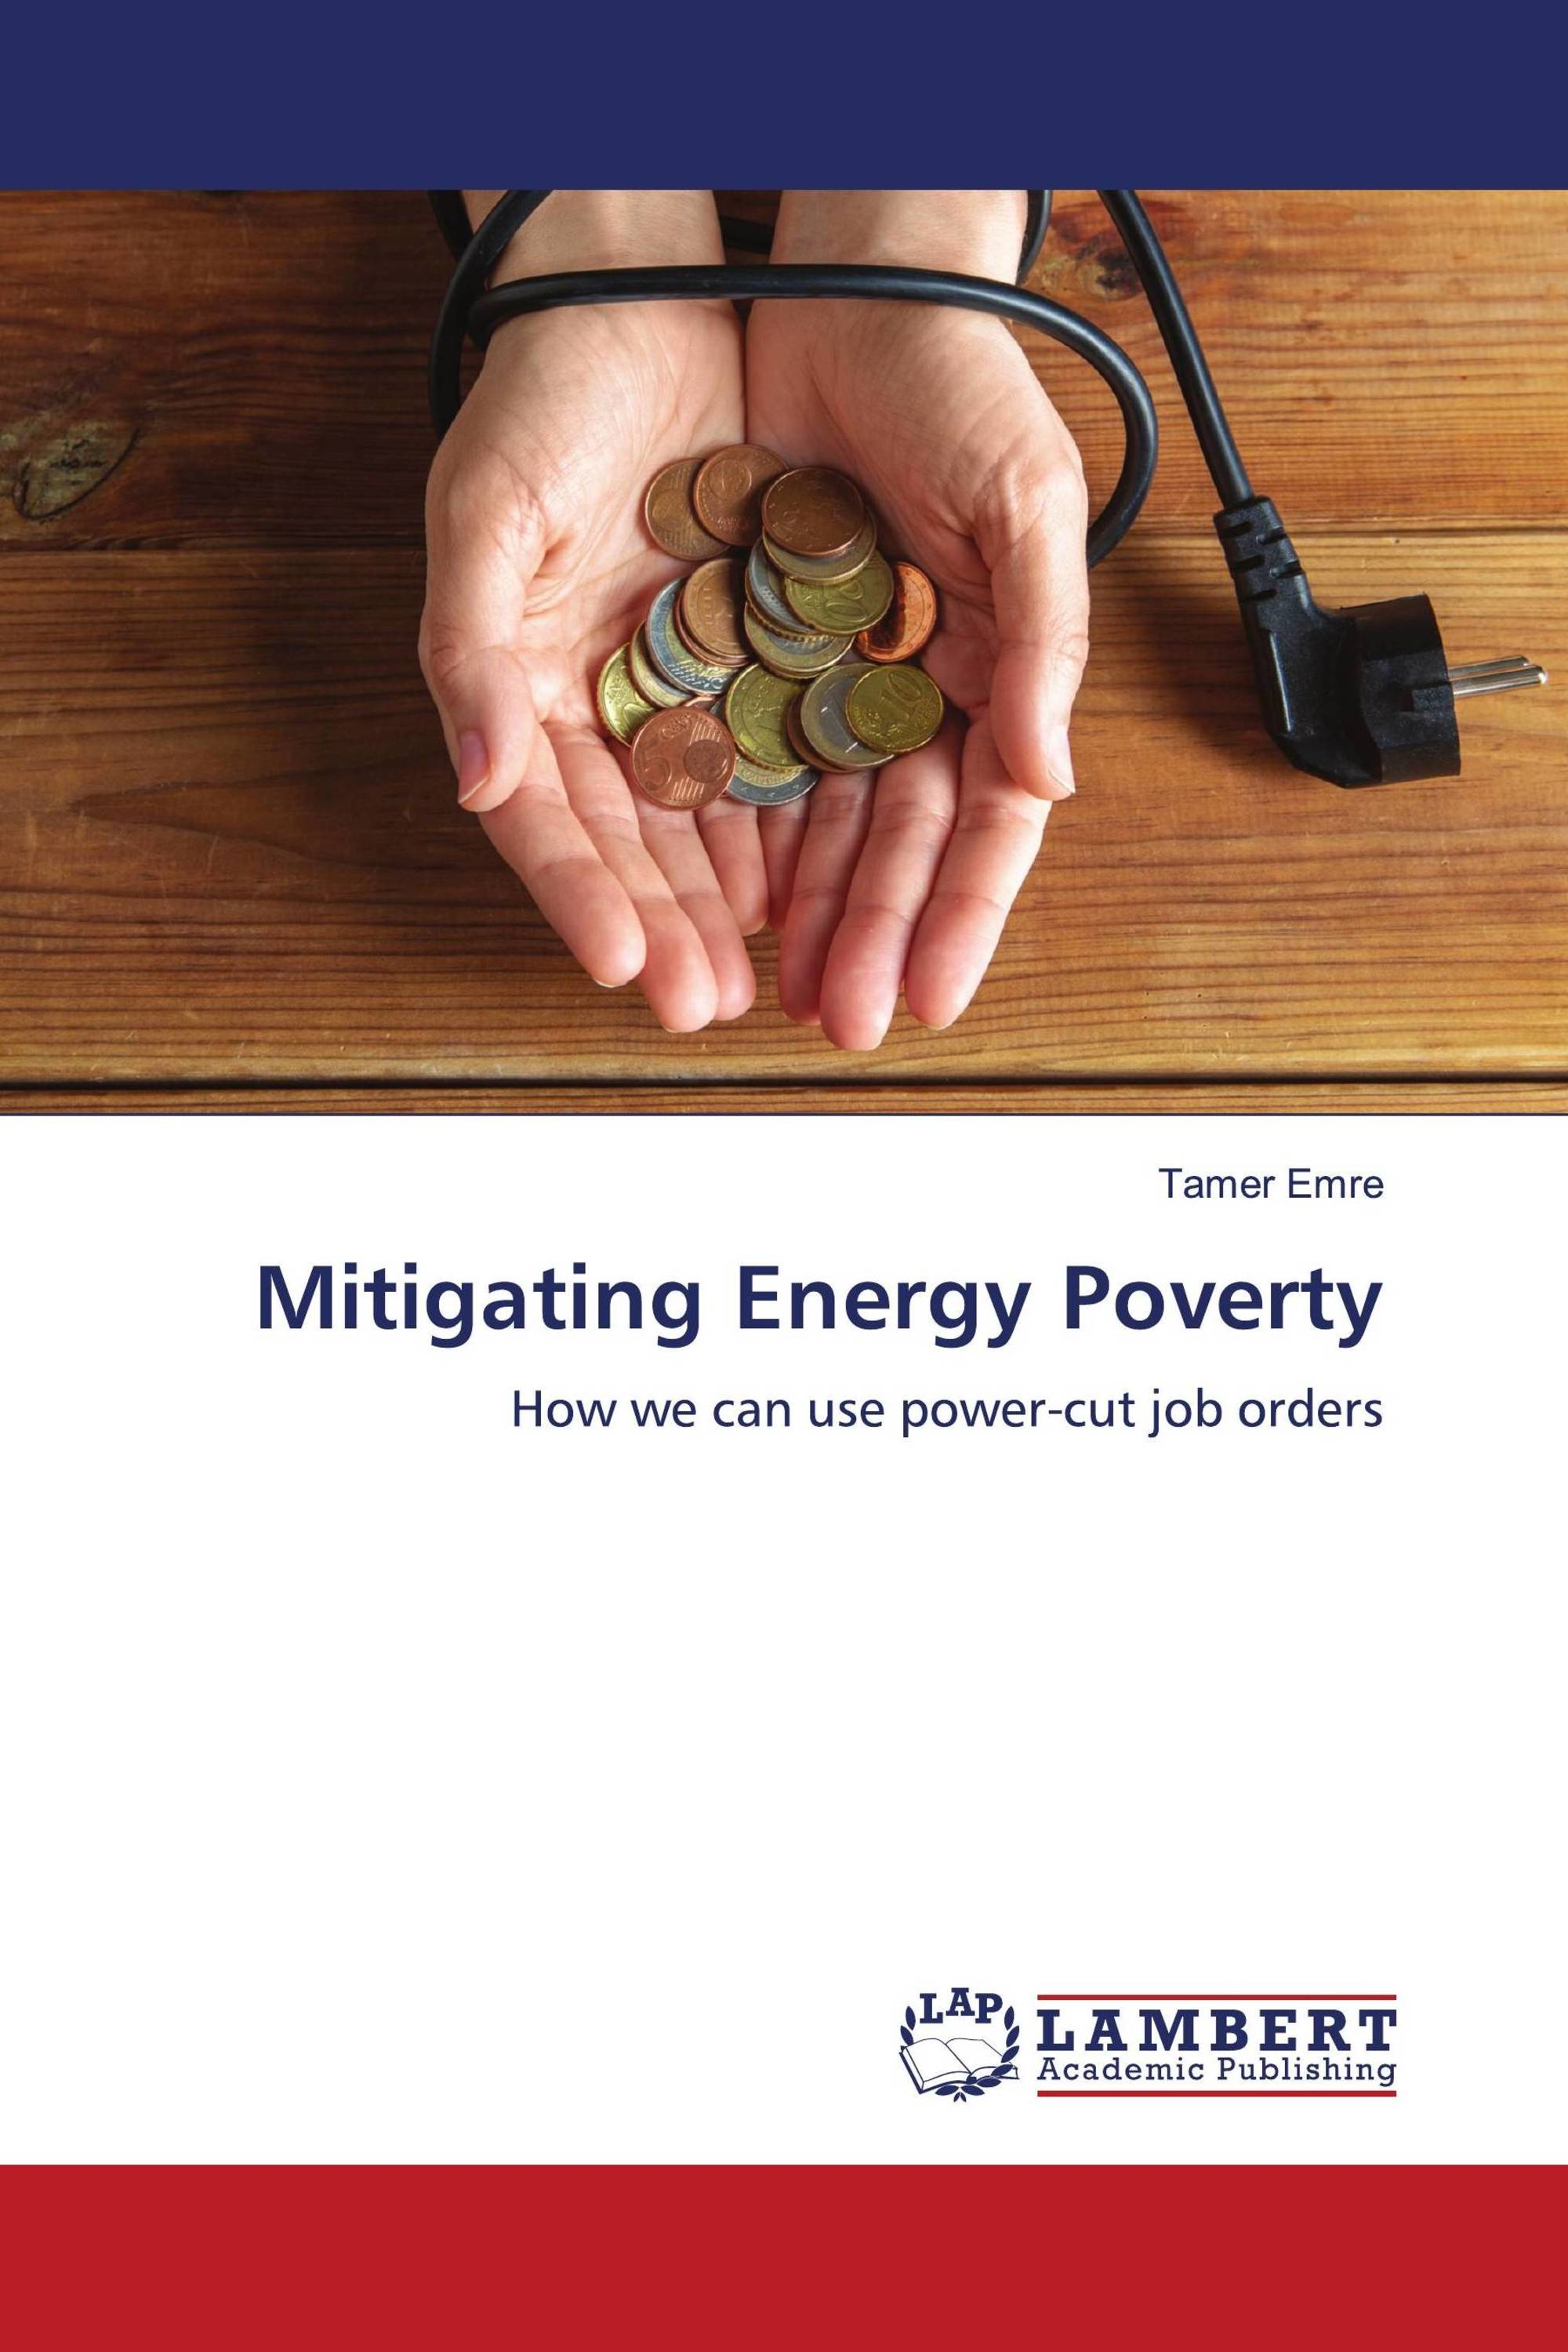 Mitigating Energy Poverty